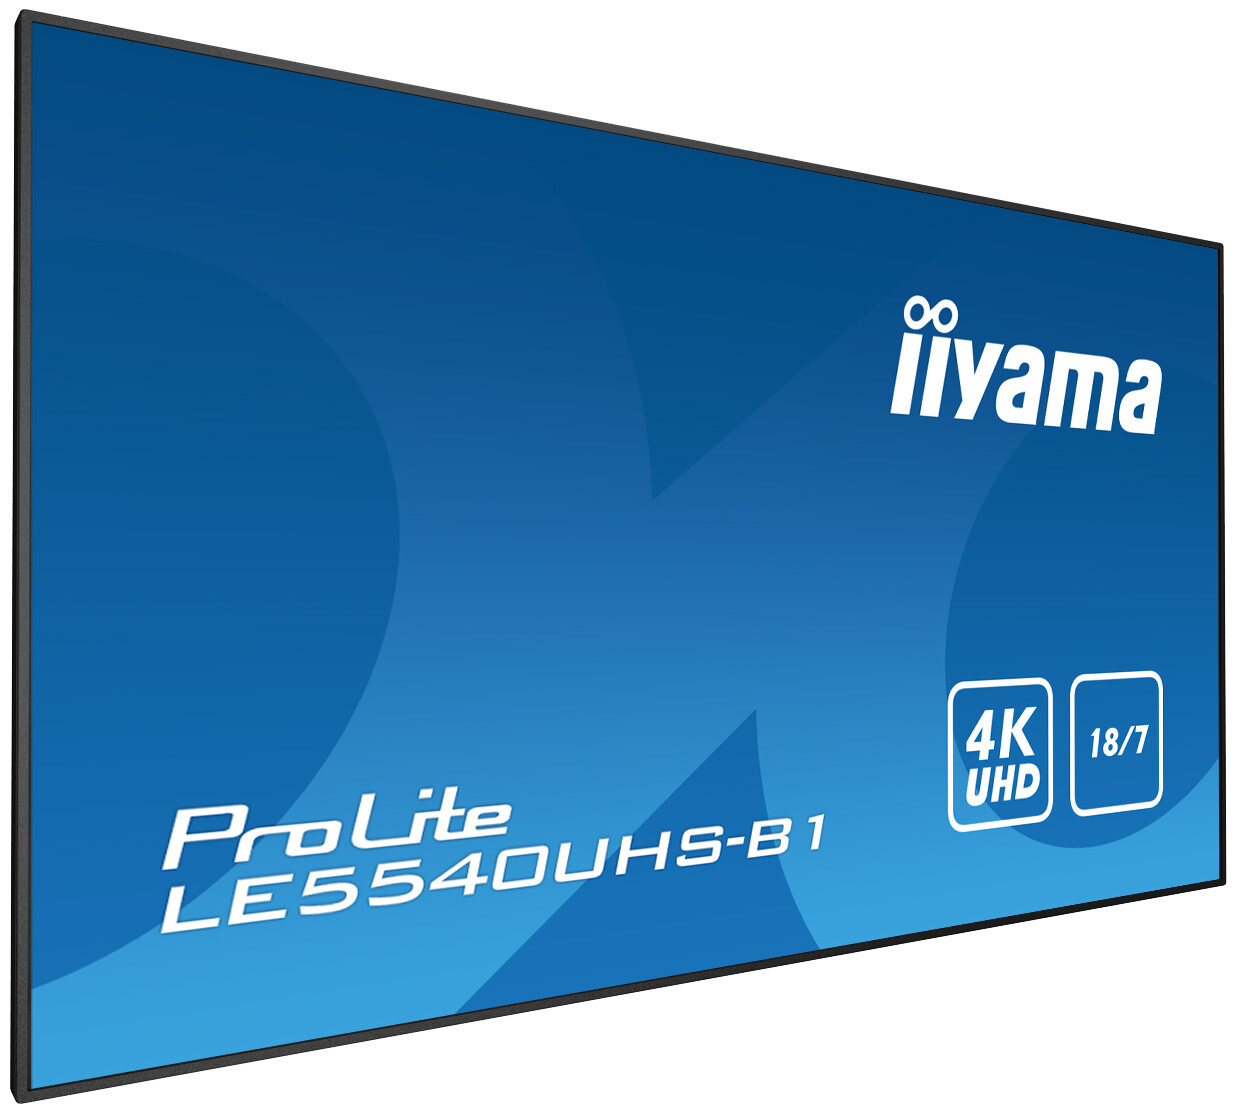 Iiyama-PROLITE-LE5540UHS-B1